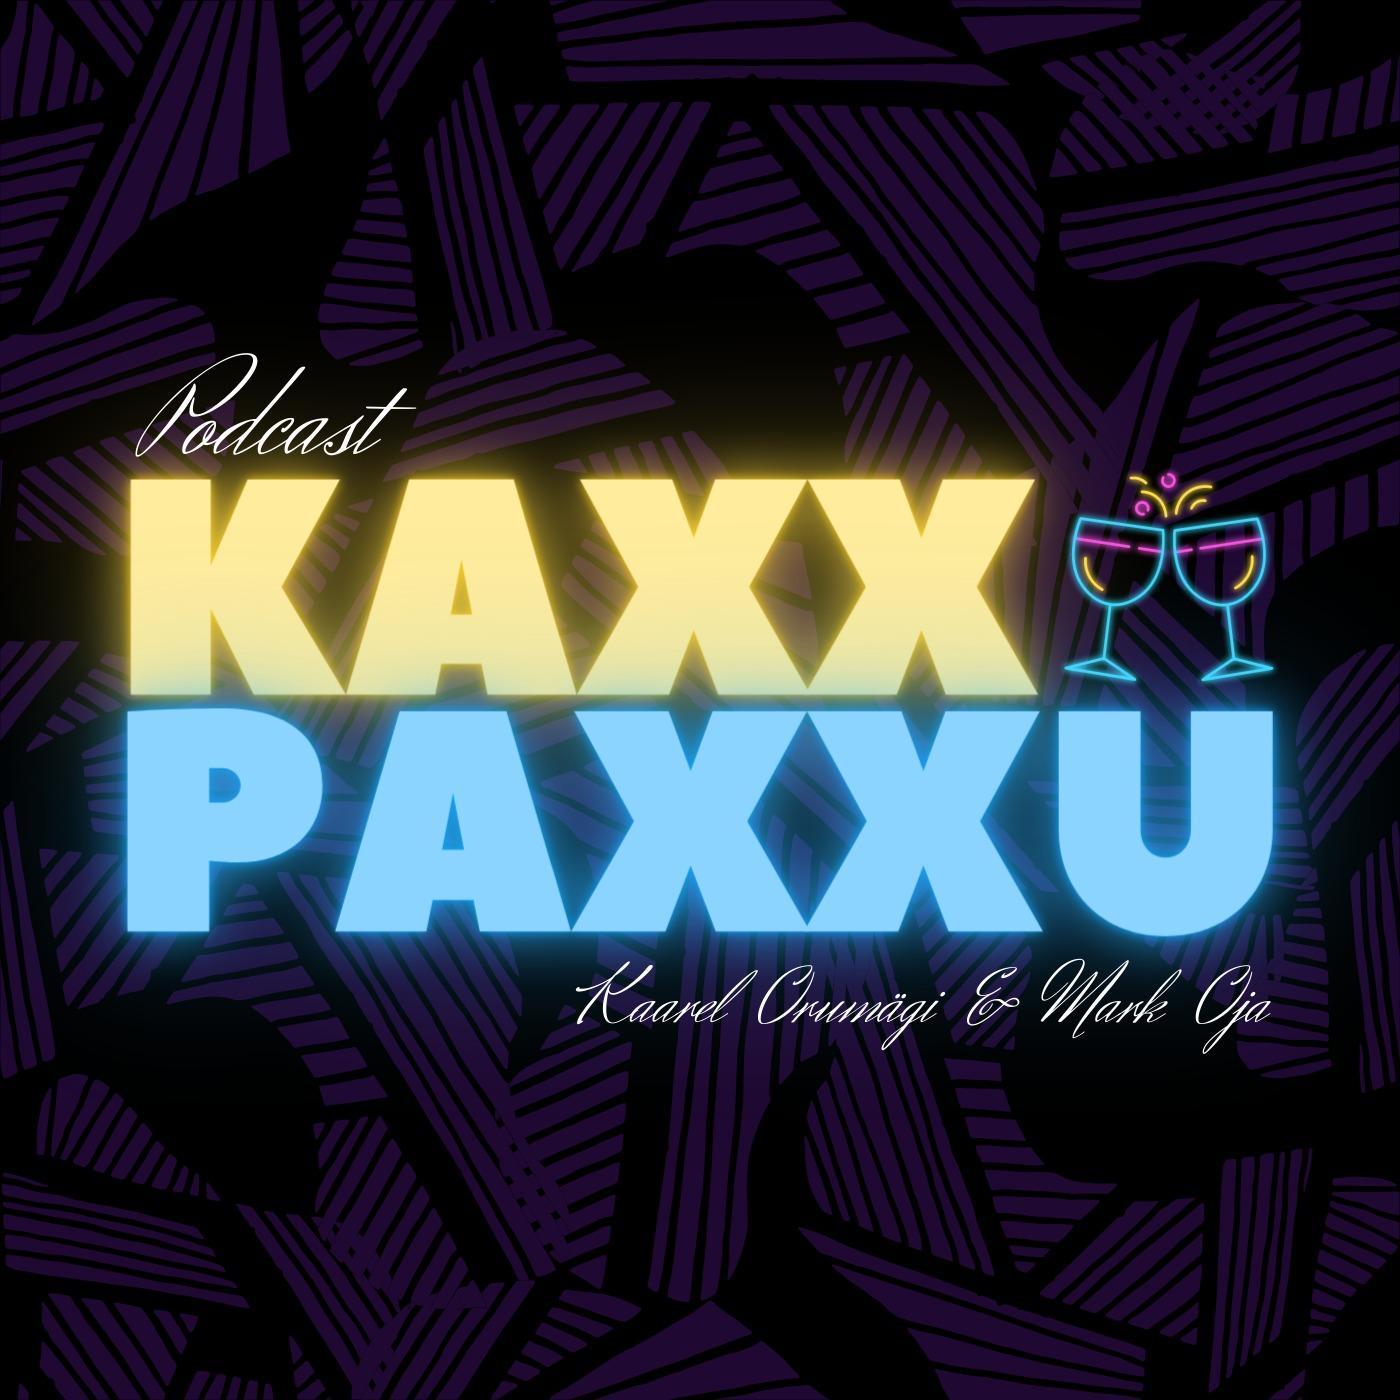 Kaxx Paxxu